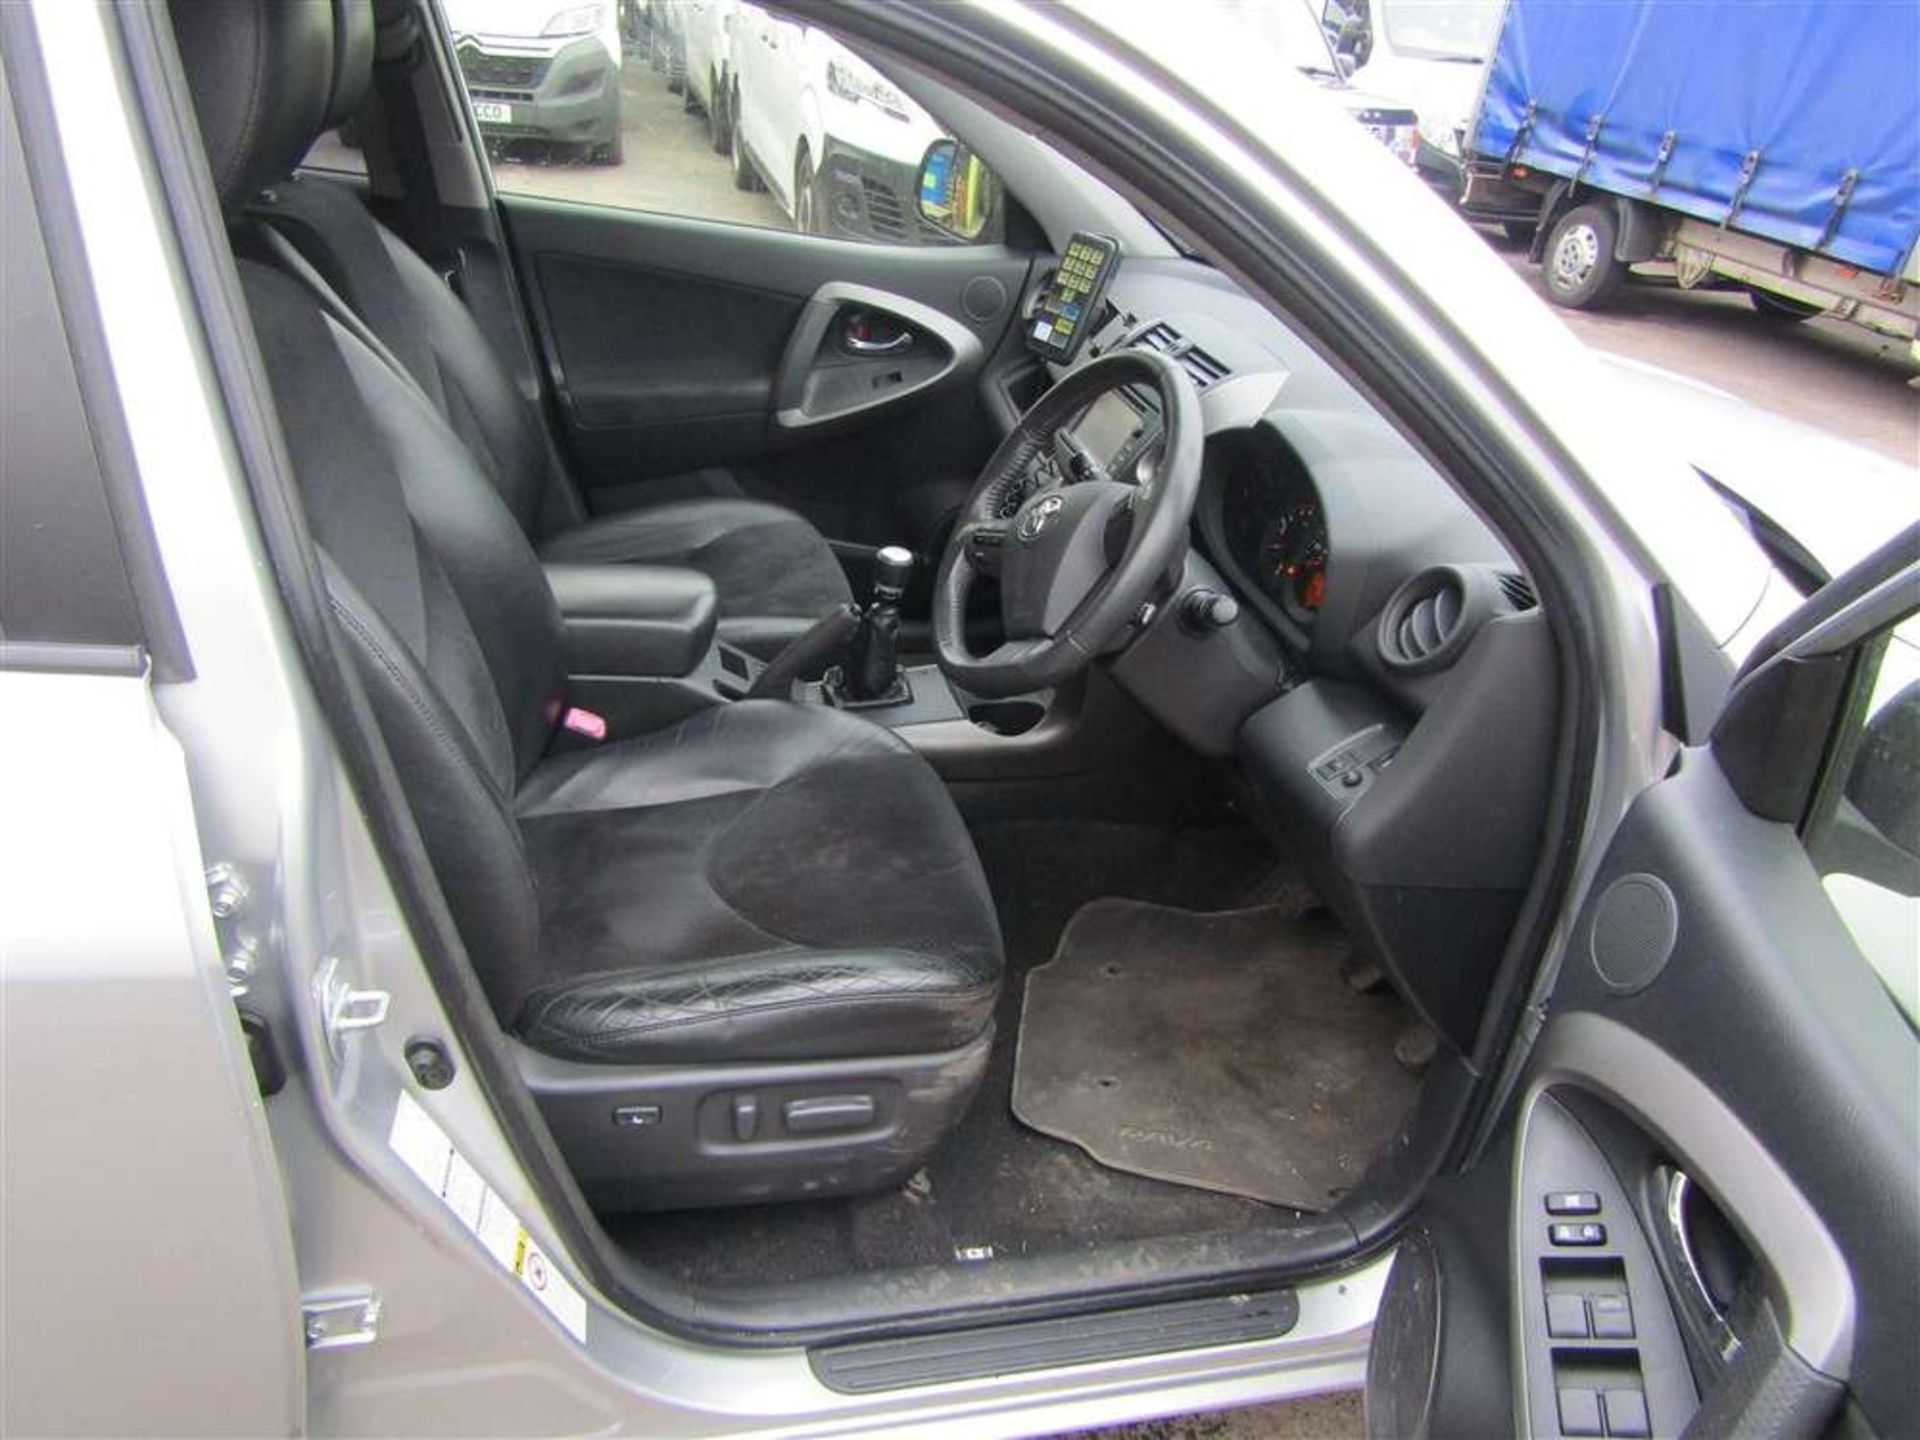 2012 12 reg Toyota RAV4 XT-R D-4D (Direct Council) - Image 5 of 6